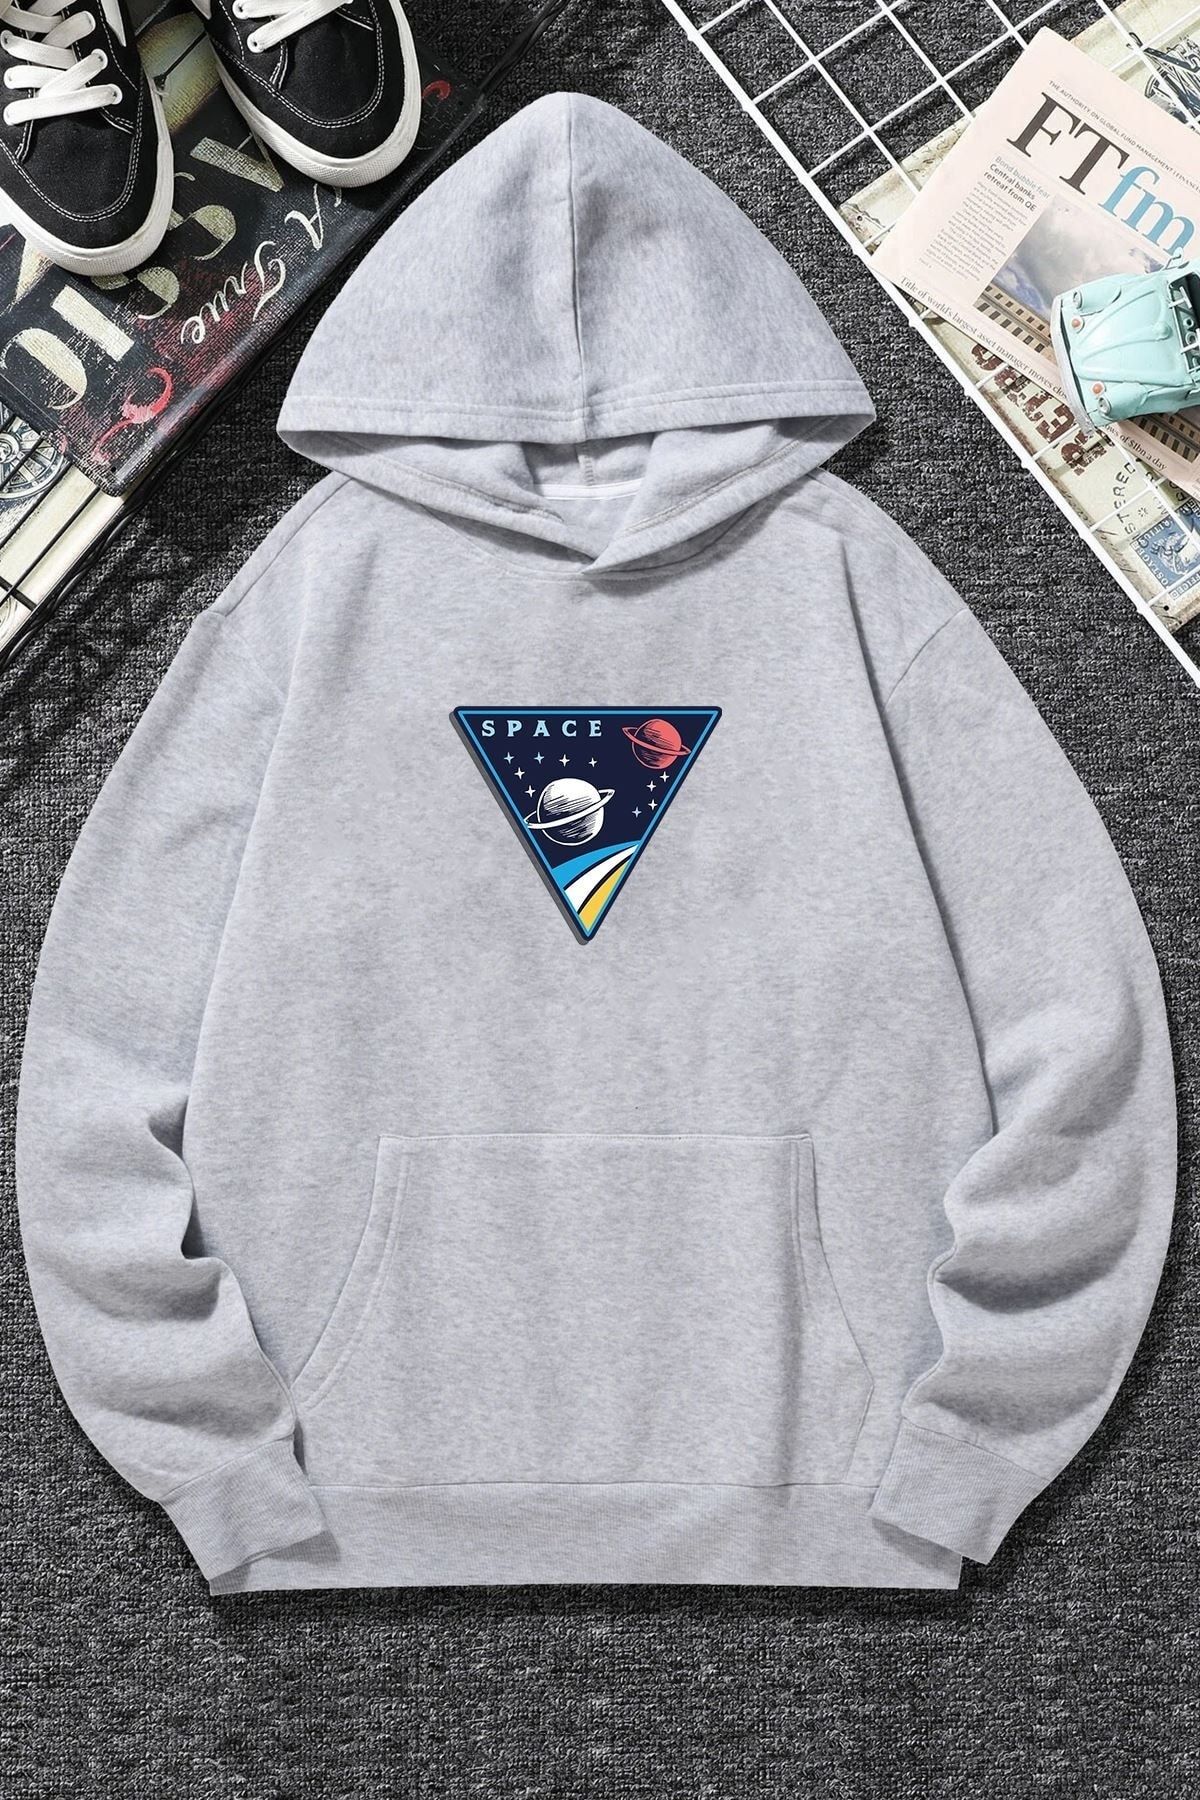 uyguntarz Unisex Space Baskılı Sweatshirt